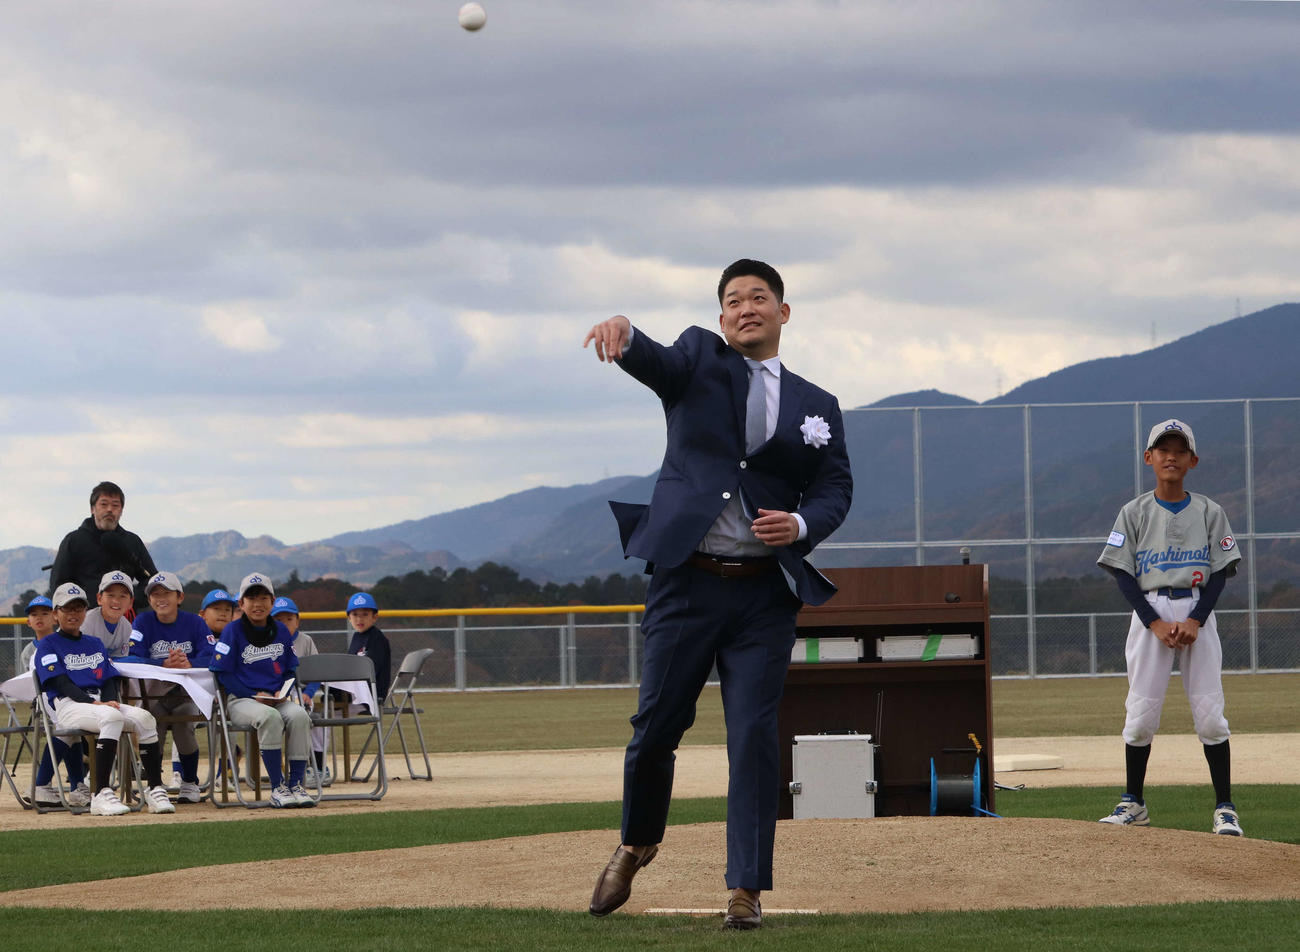 「YOSHITOMO TSUTSUGO SPORTS ACADEMY」の竣工（しゅんこう）式・施設お披露目会に出席し、始球式でボールを投げる筒香（撮影・小早川宗一郎）